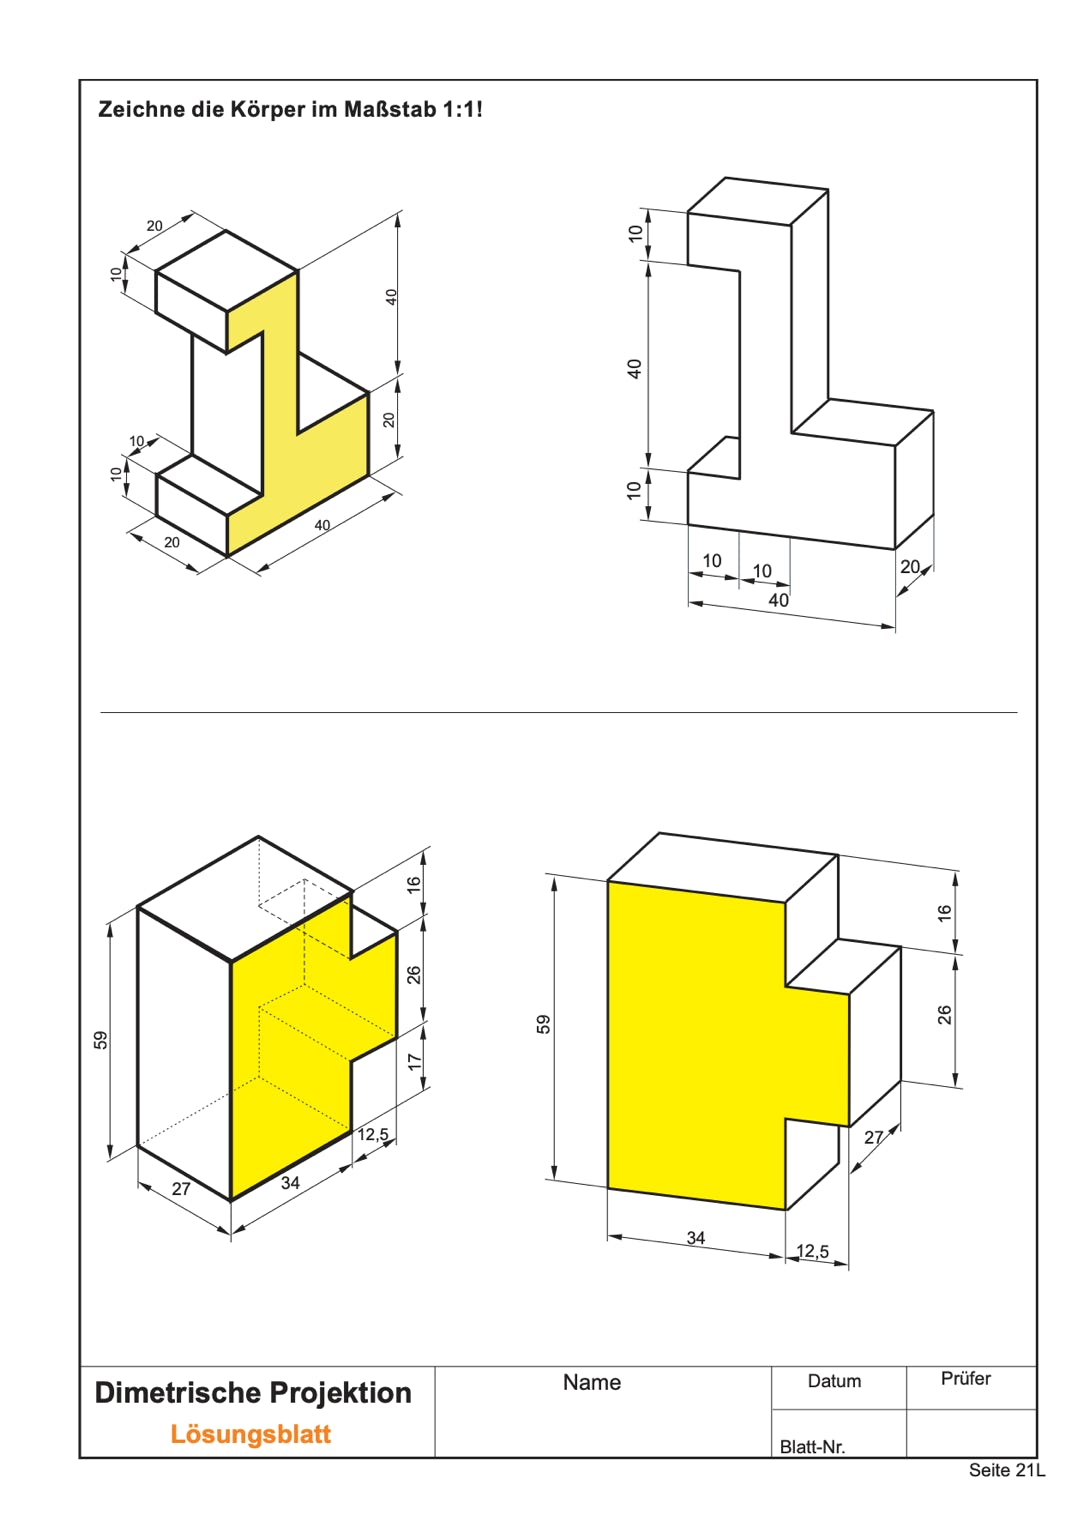 Dimetrische Projektion - Lösungsblatt